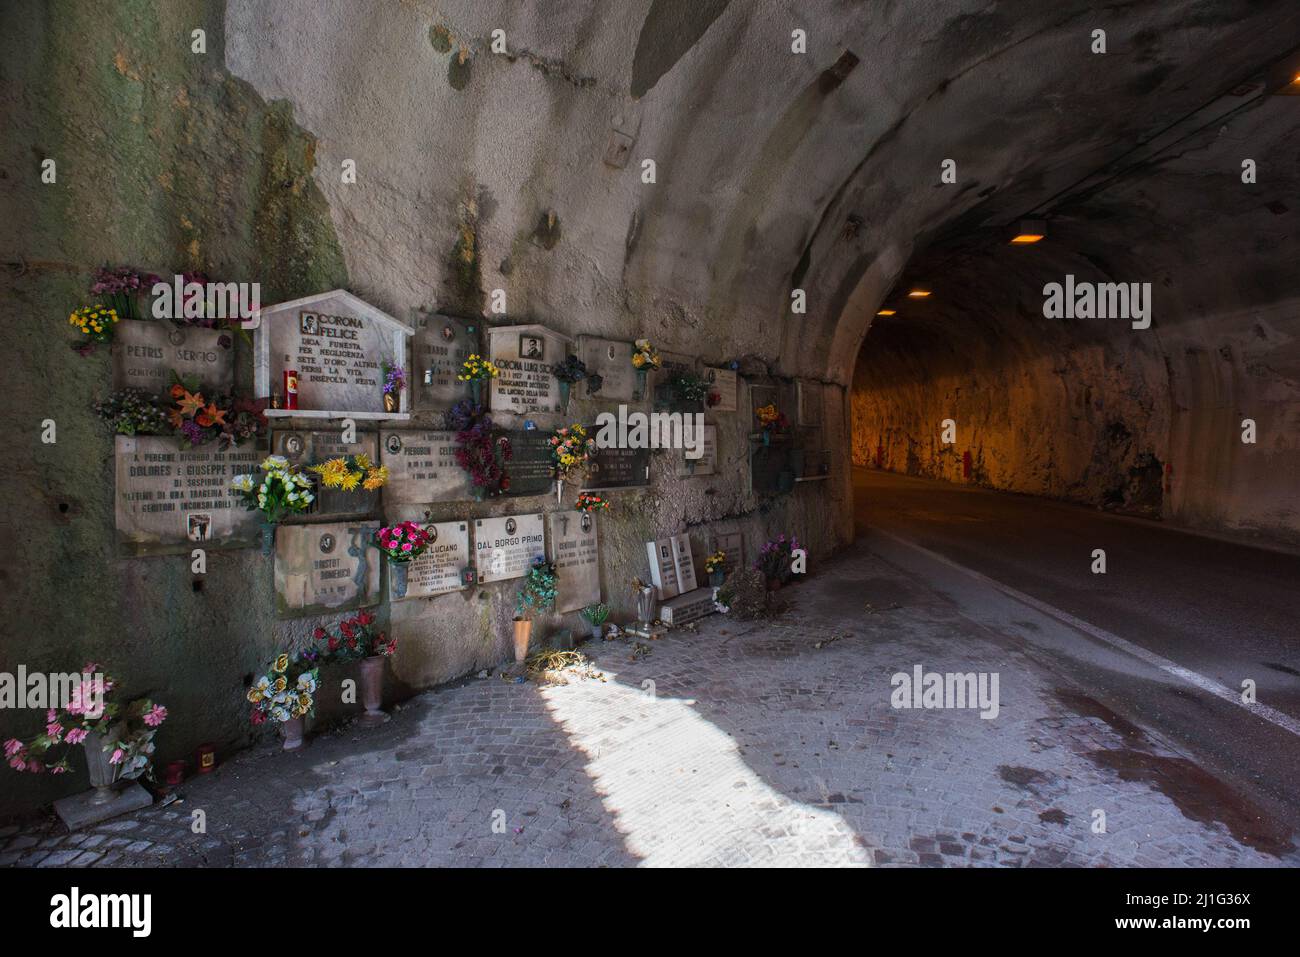 Erto und Casso (Pordenone), Italien 21/05/2016: Grabsteine in Erinnerung an die Arbeiter, die beim Bau des Staudamms und der Vajont-Katastrophe im Oktober 1963 getötet wurden. © Andrea Sabbadini Stockfoto